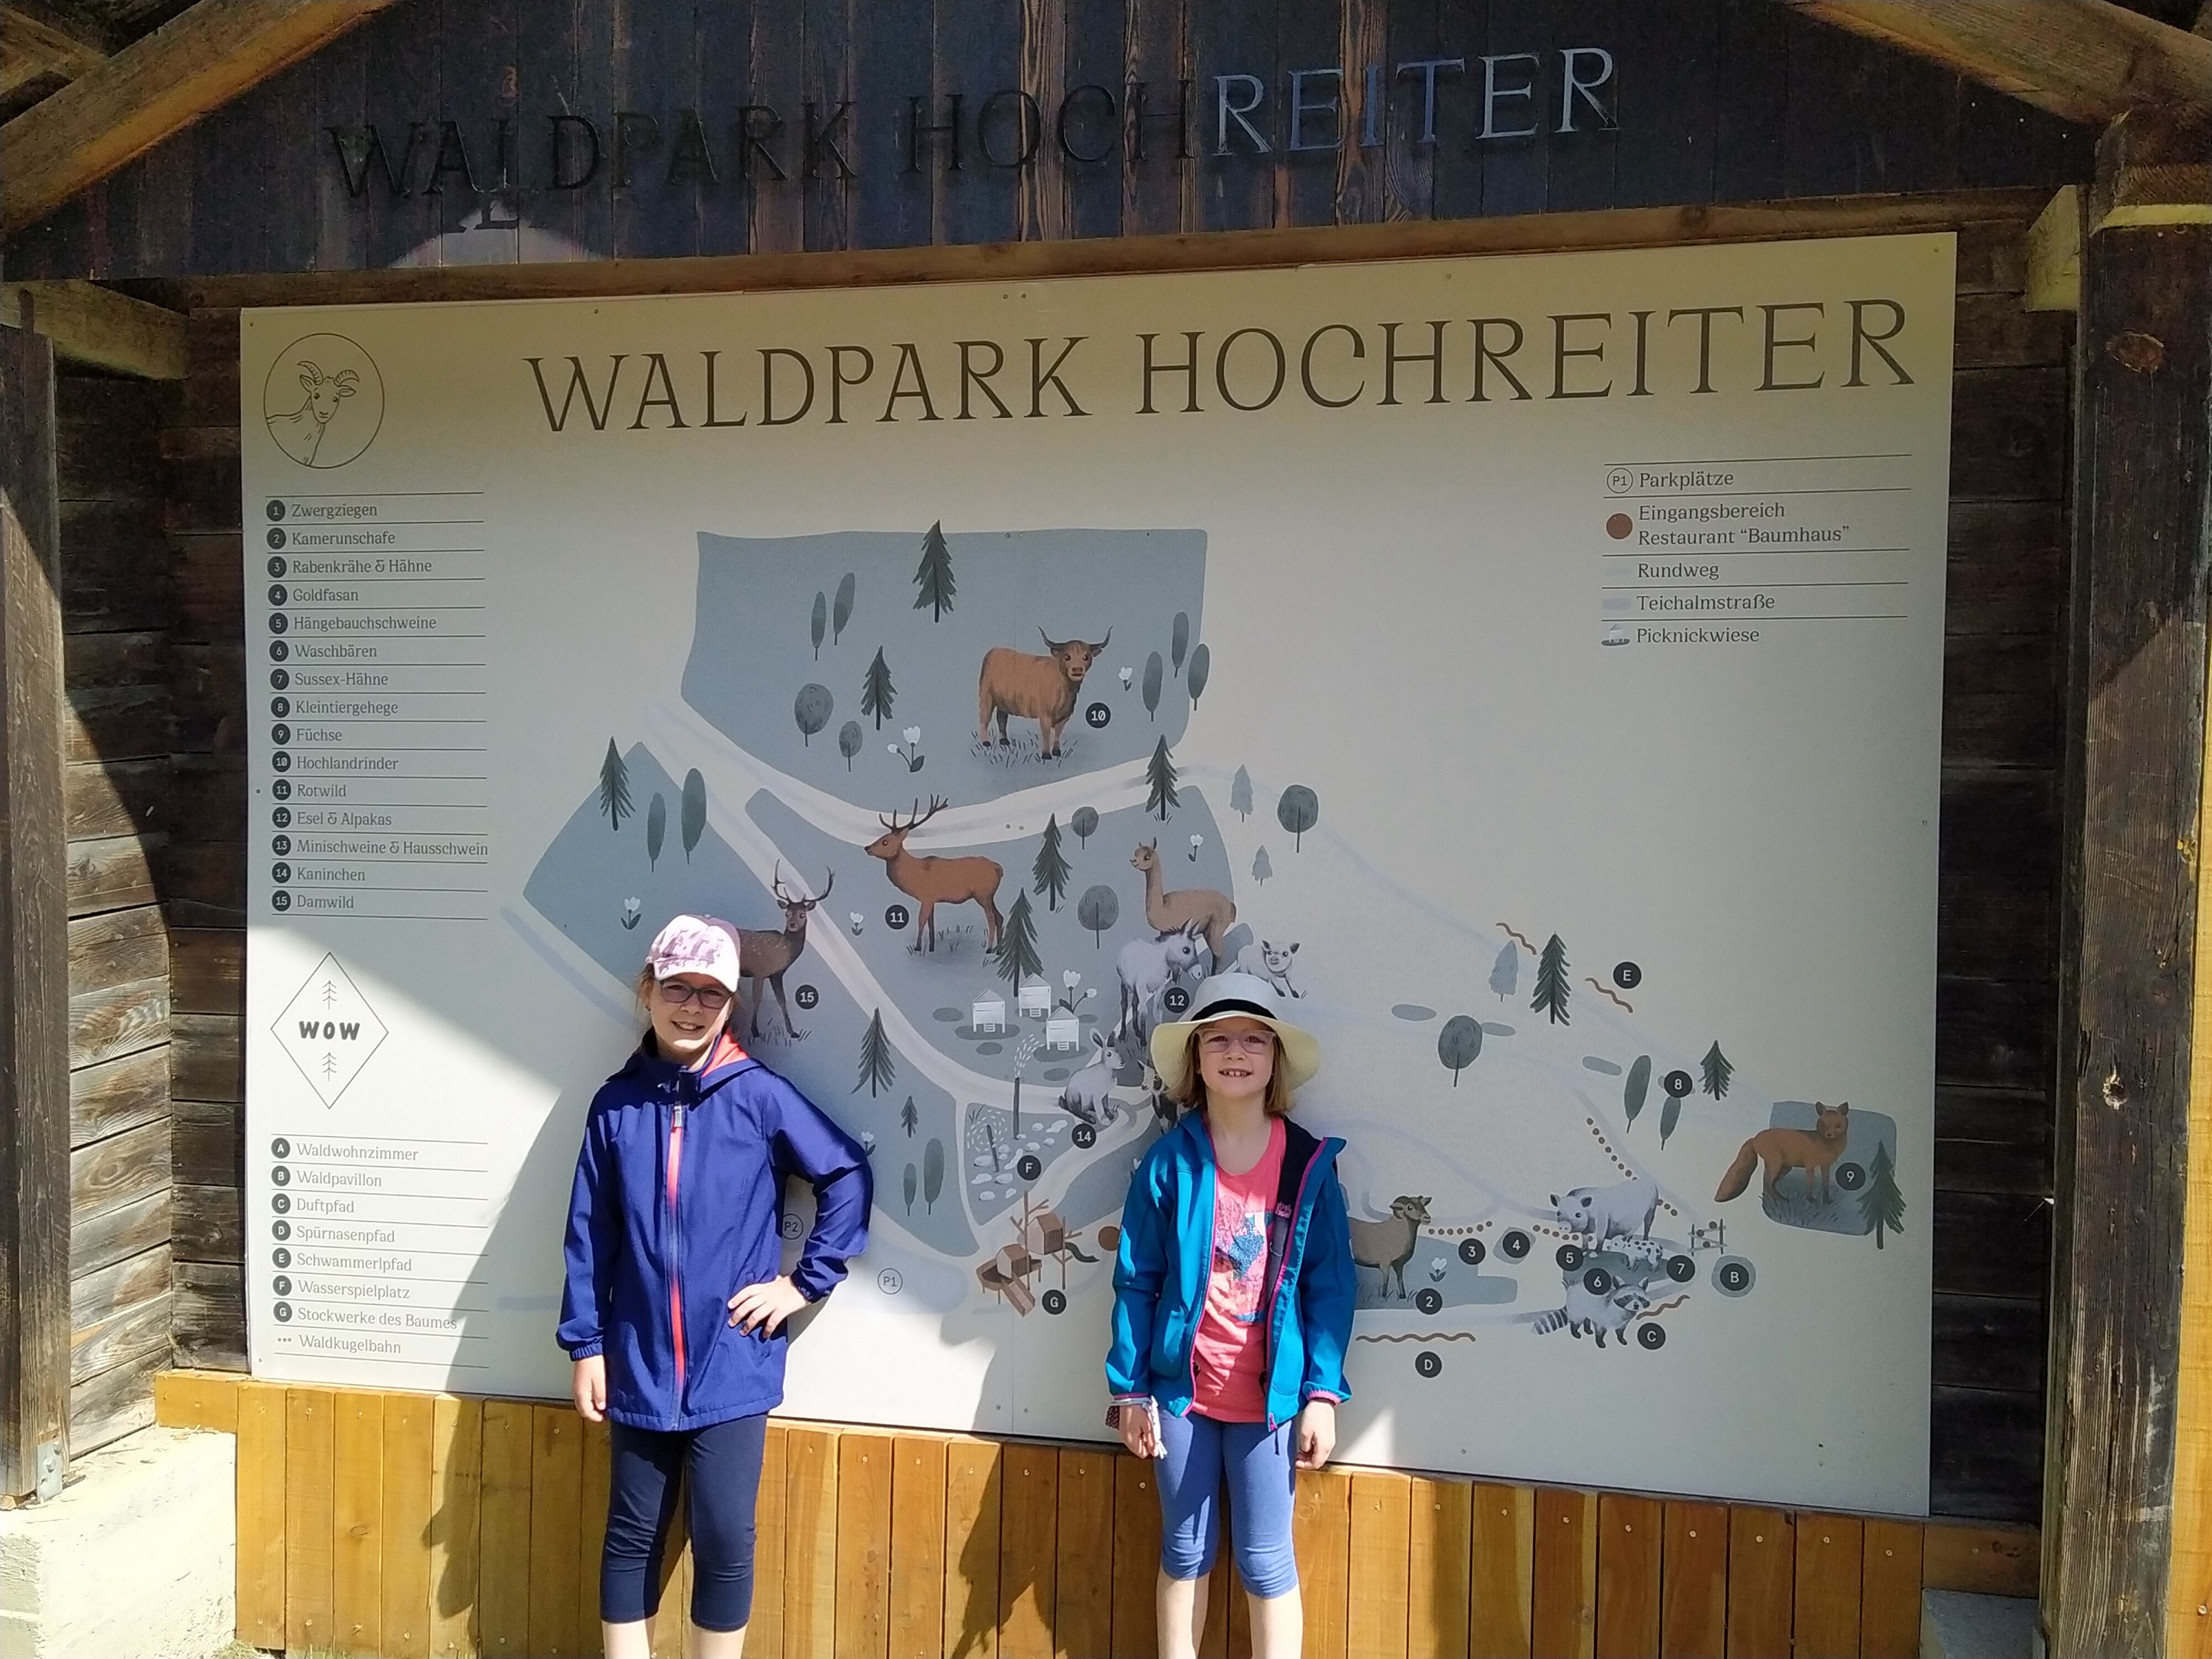 Waldpark Hochreiter